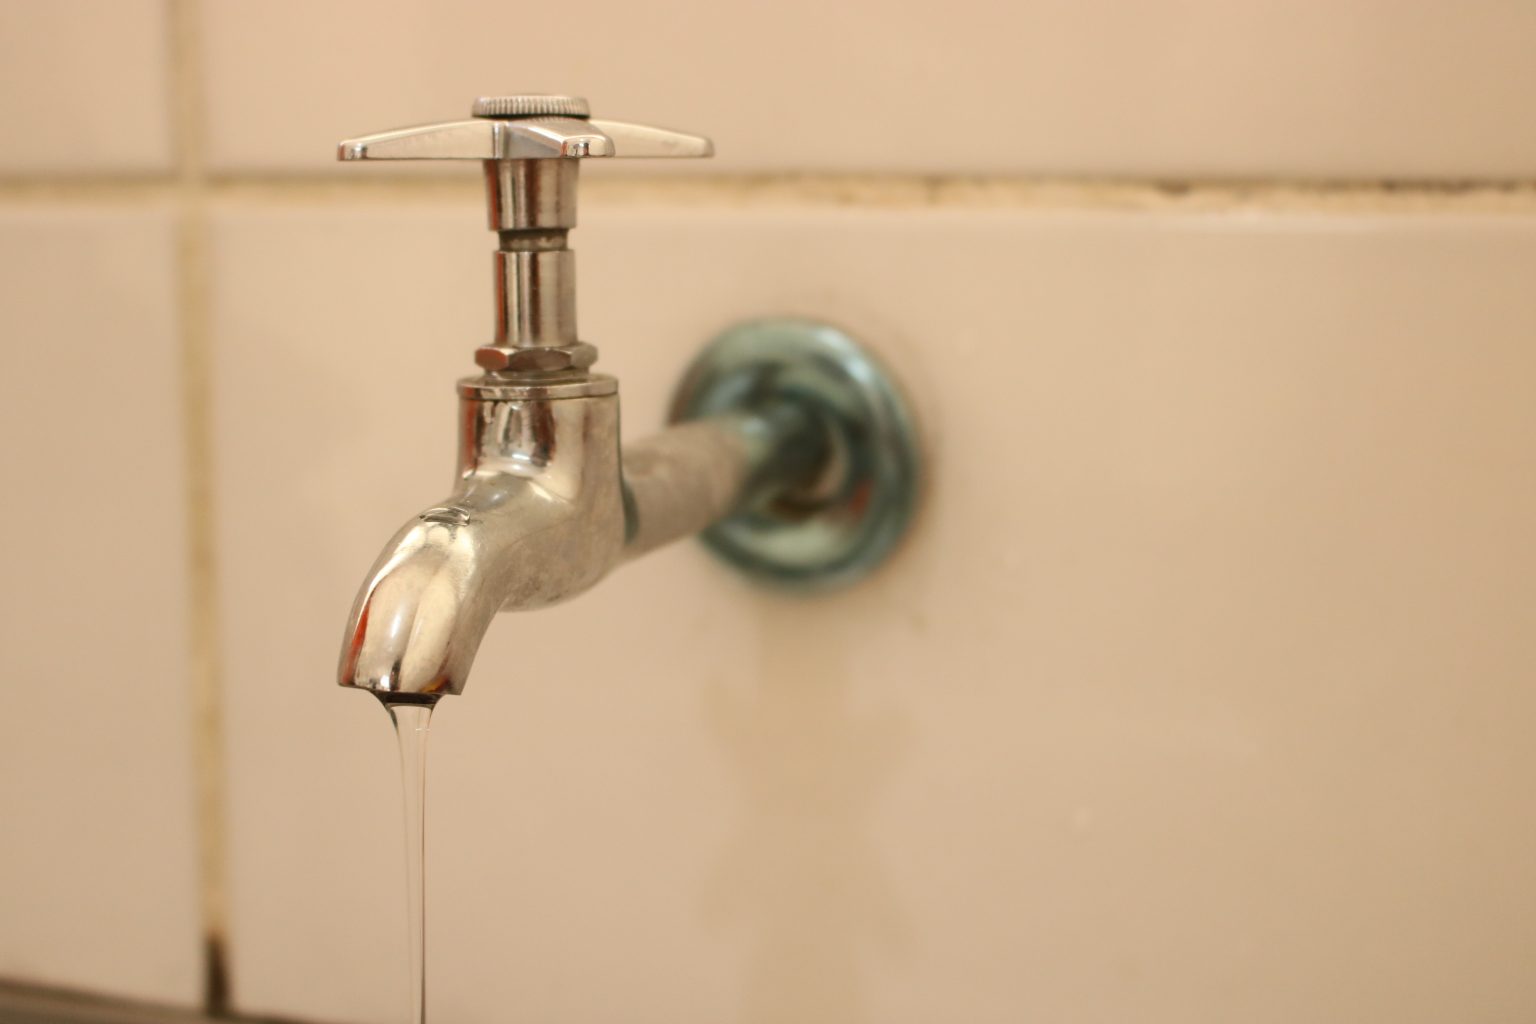 Escassez hídrica compromete abastecimento de 19 bairros de Ouro Preto